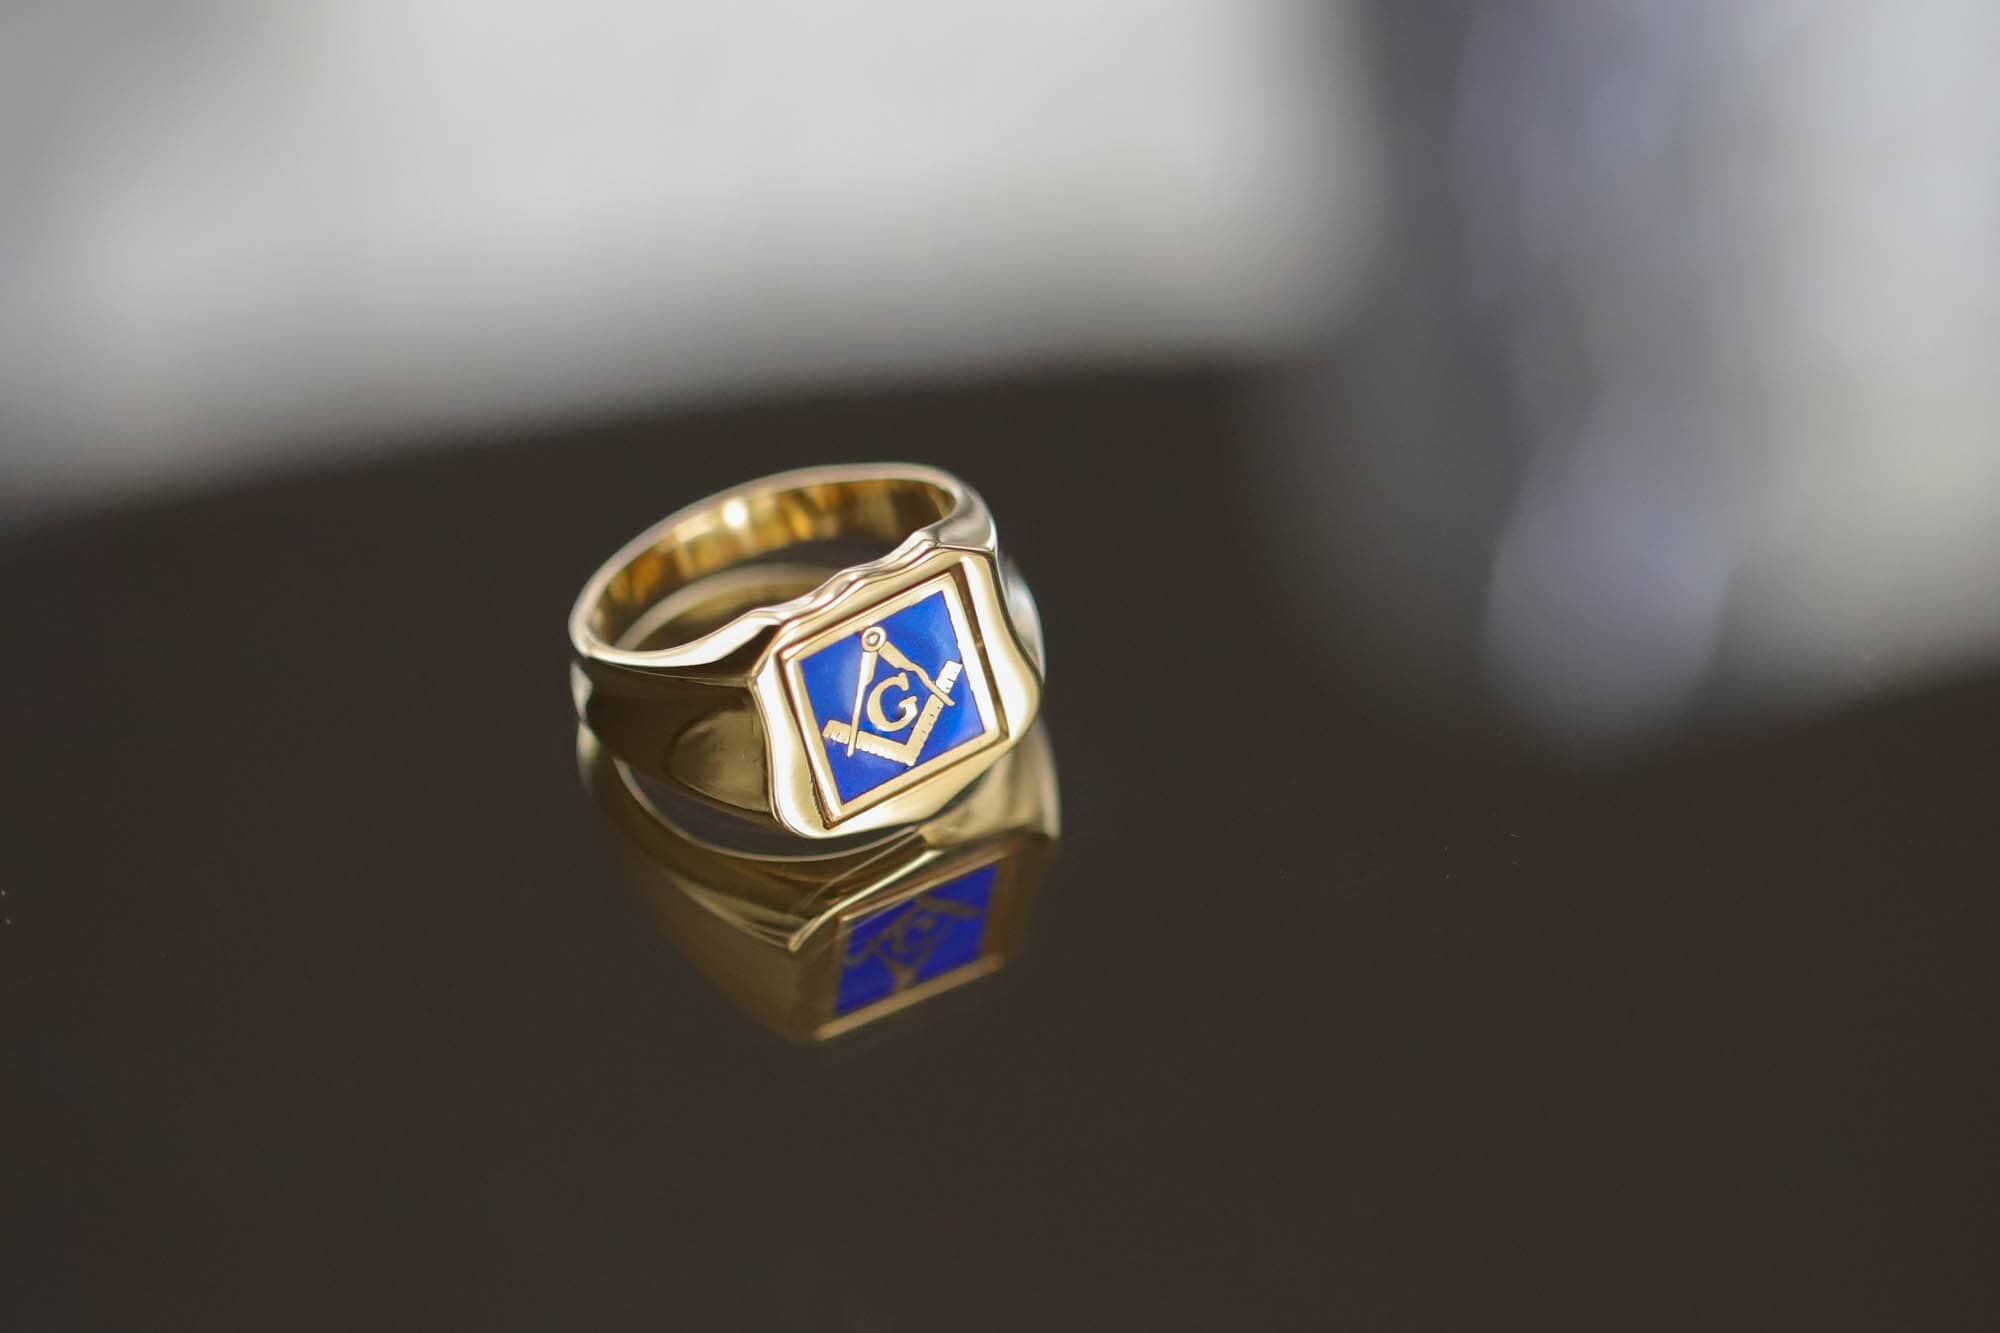 RECTANGULAR GOLD BLUE LODGE MASONIC RING WITH STONE COLOUR style 33 -  Masonic Supply Shop Canada